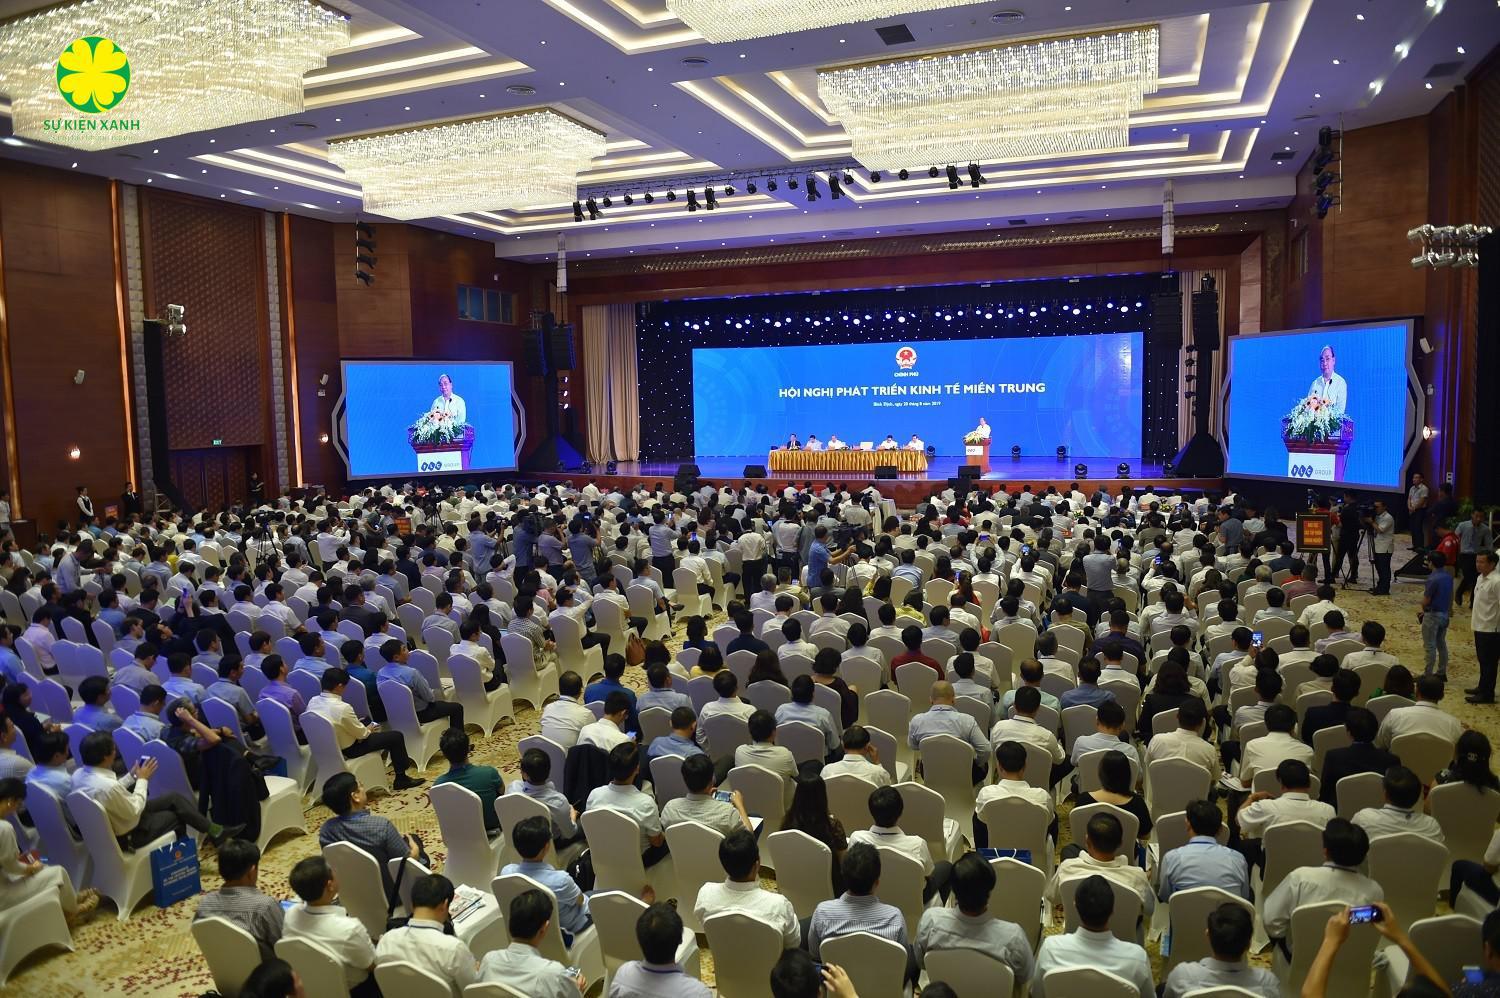 Tổ chức Hội thảo tại Lai Châu , Sự Kiện Xanh, Viet Green Media